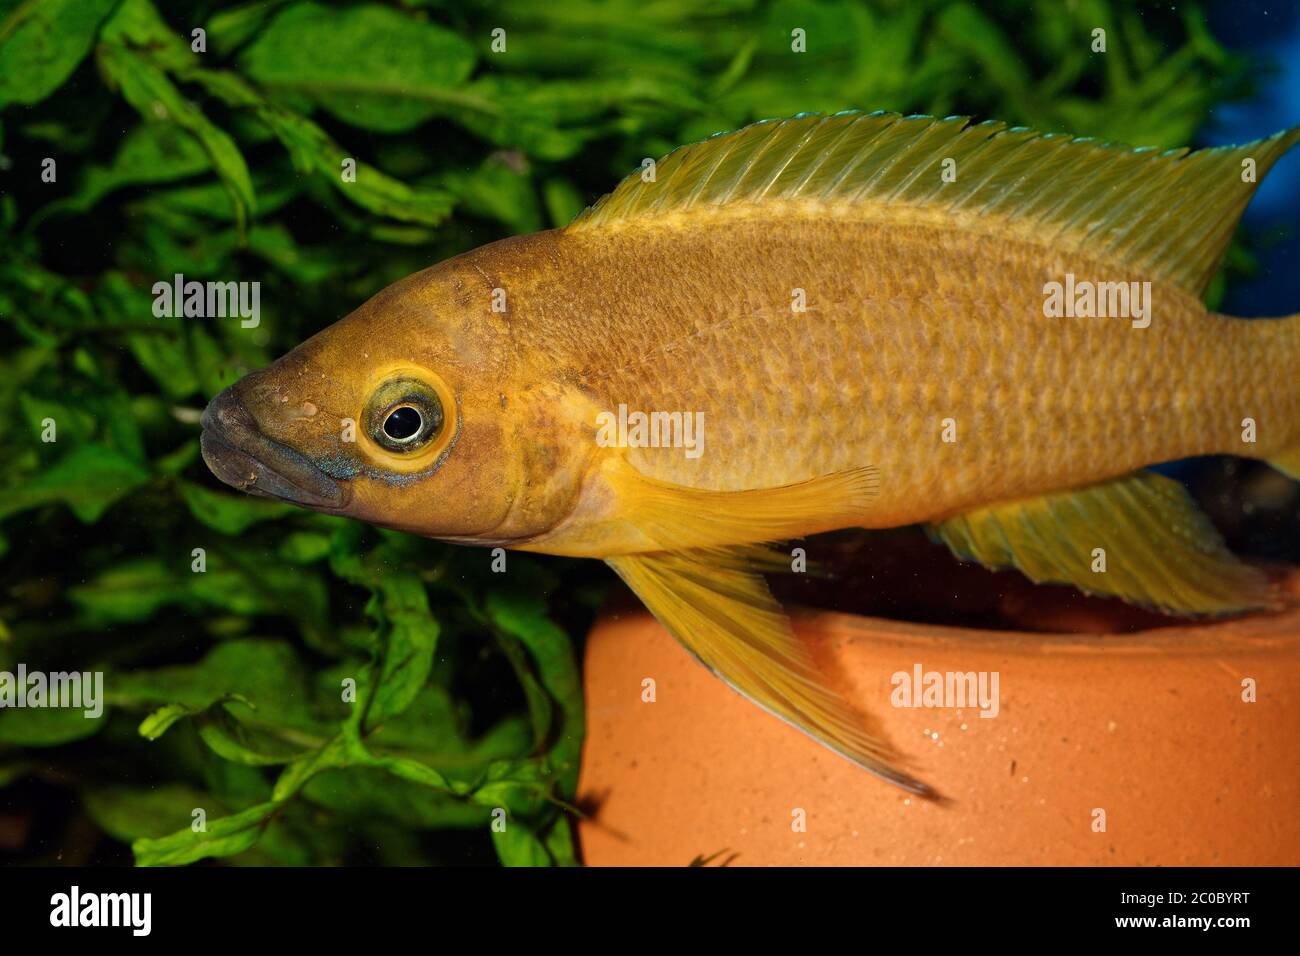 Neolamprologus fish Stock Photo